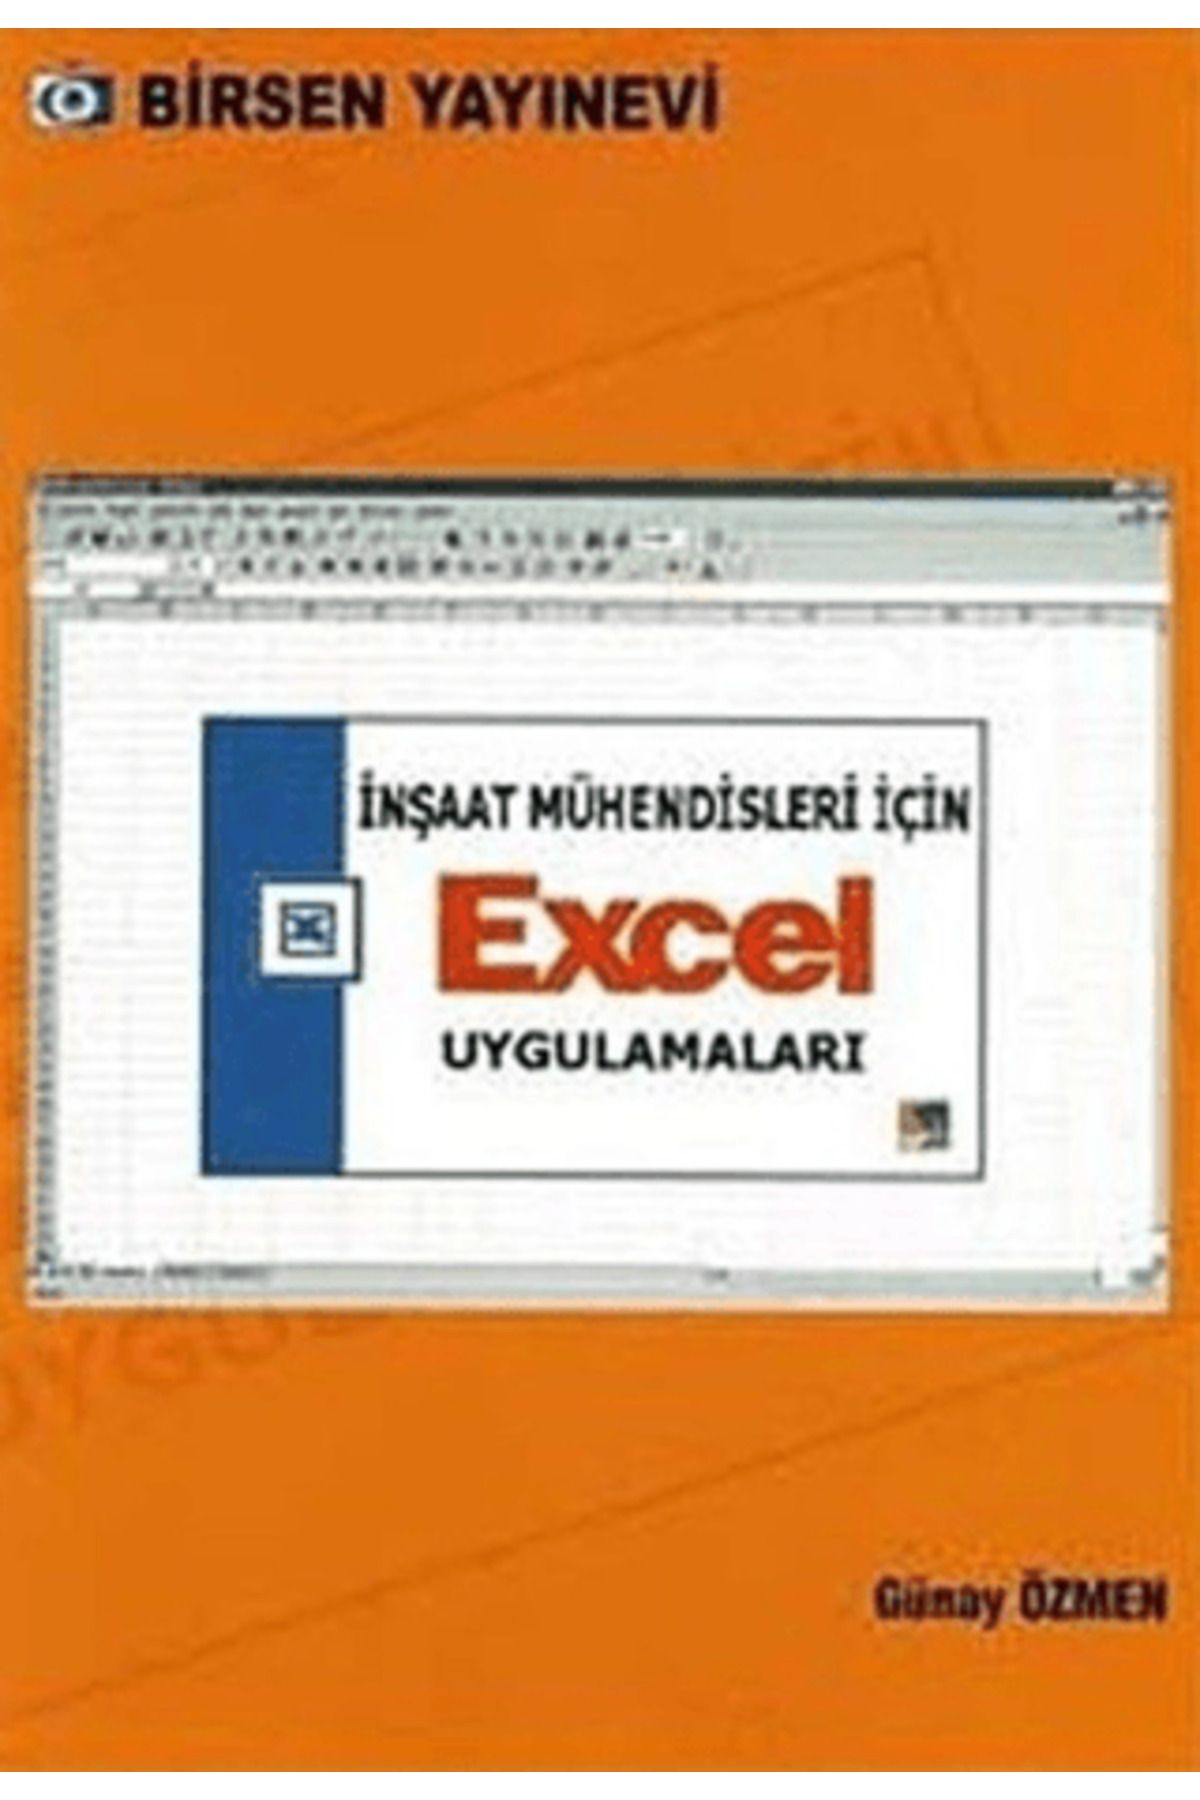 Birsen Yayınevi İnşaat Mühendisleri İçin Excel Uygulamaları